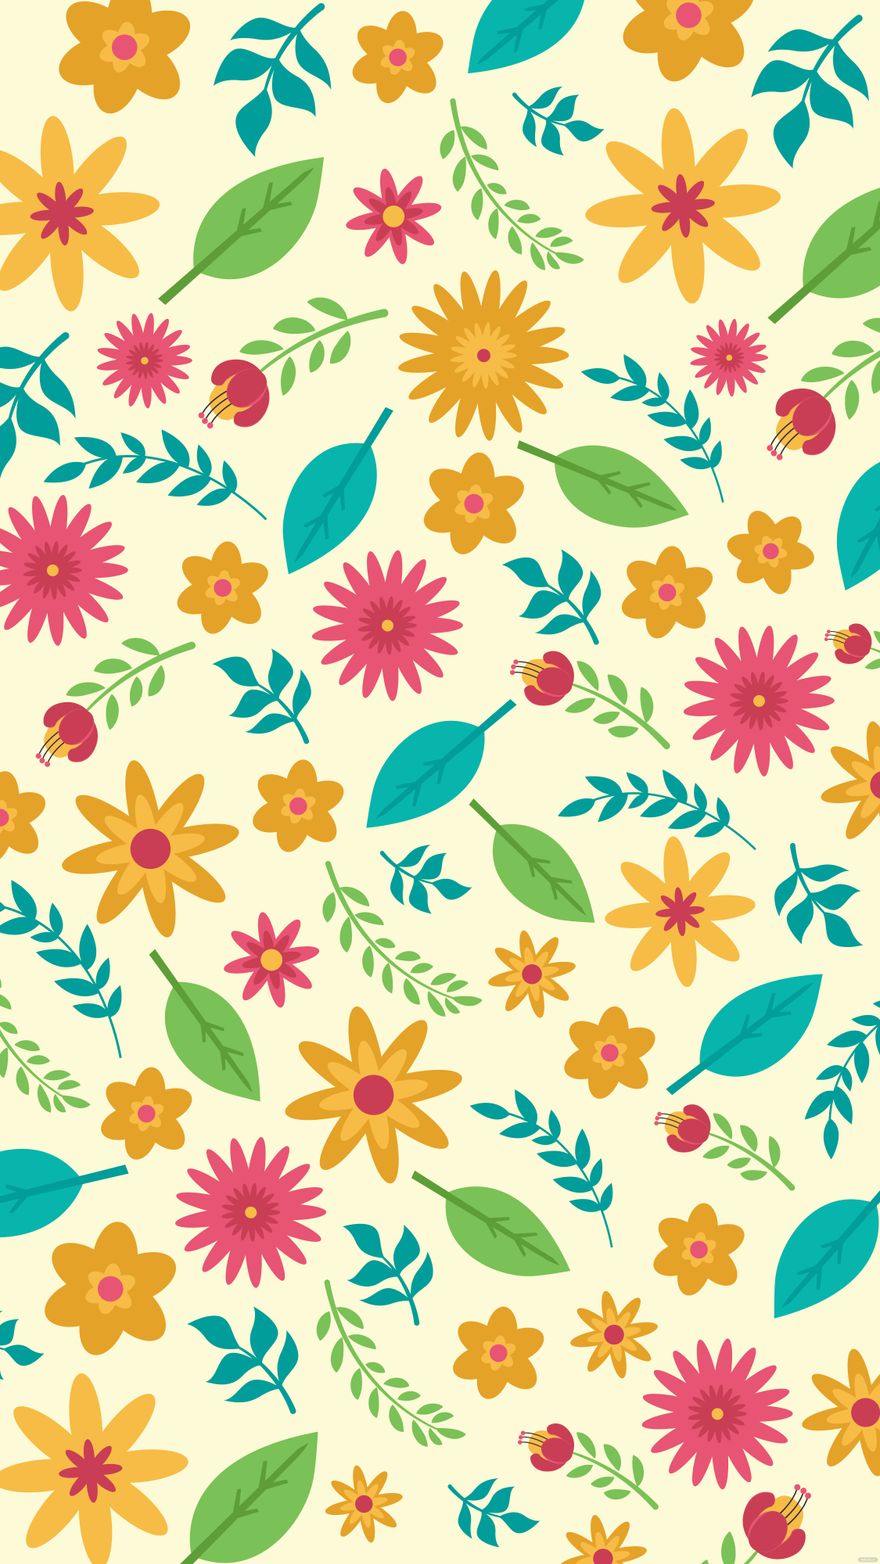 Free Summer Floral Pattern Background in Illustrator, EPS, SVG, JPG